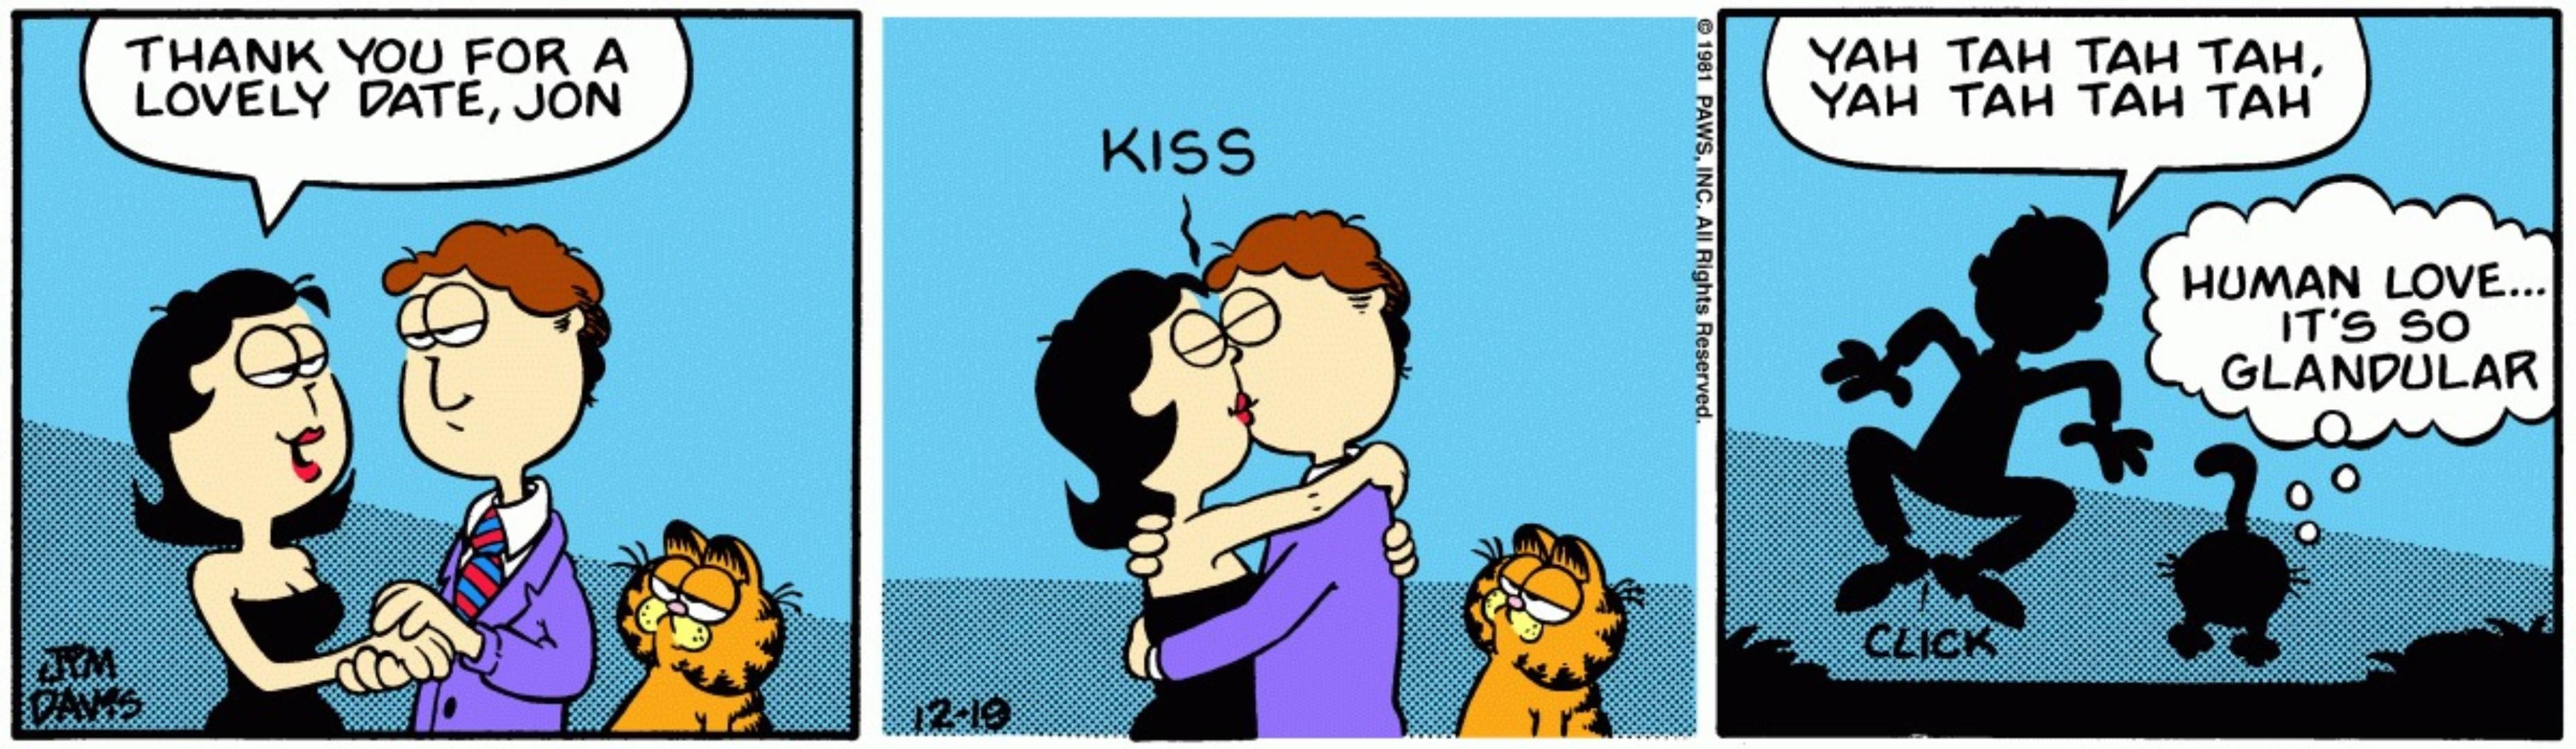 Jon and Liz kiss